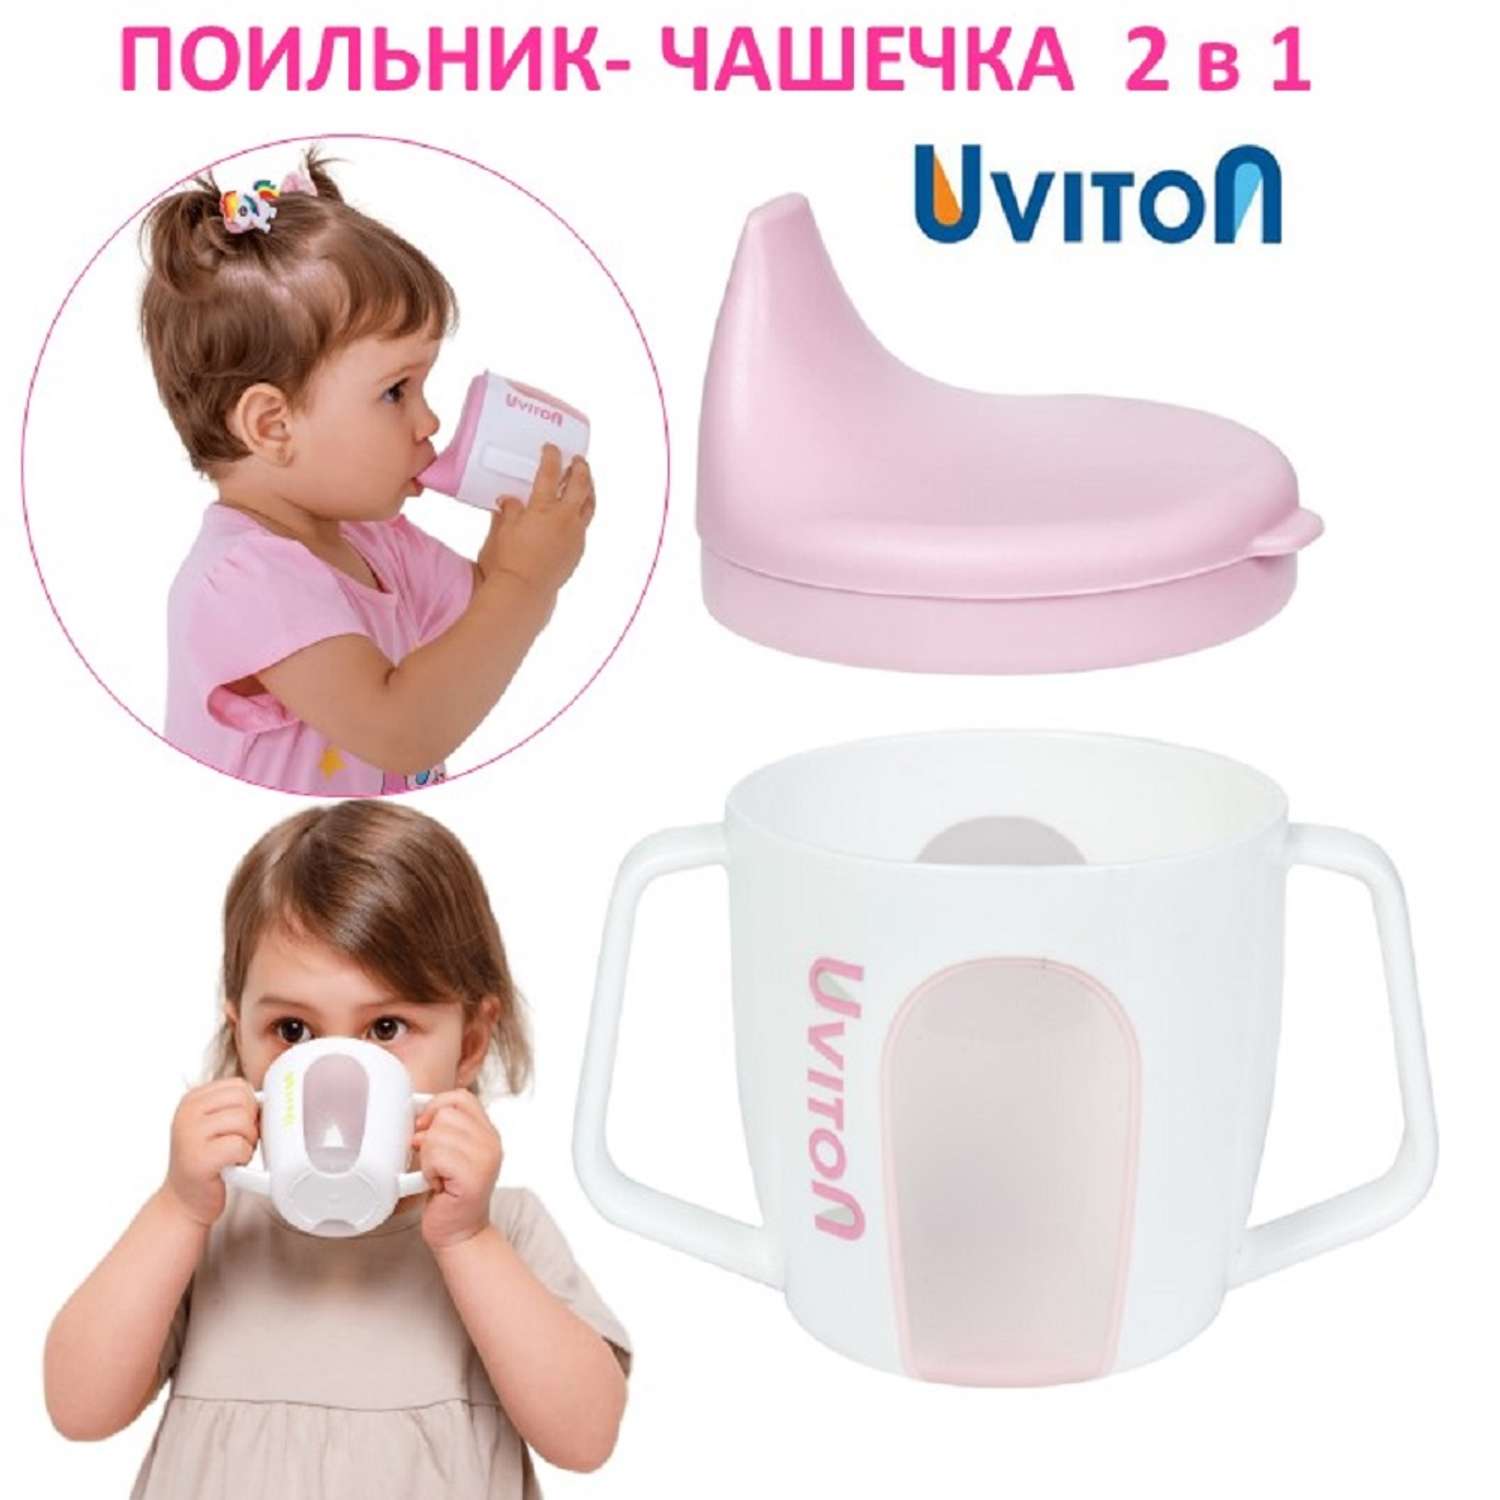 Поильник-чашечка Uviton 2 в 1 обучающий 200 мл. Розовый 0234 - фото 1